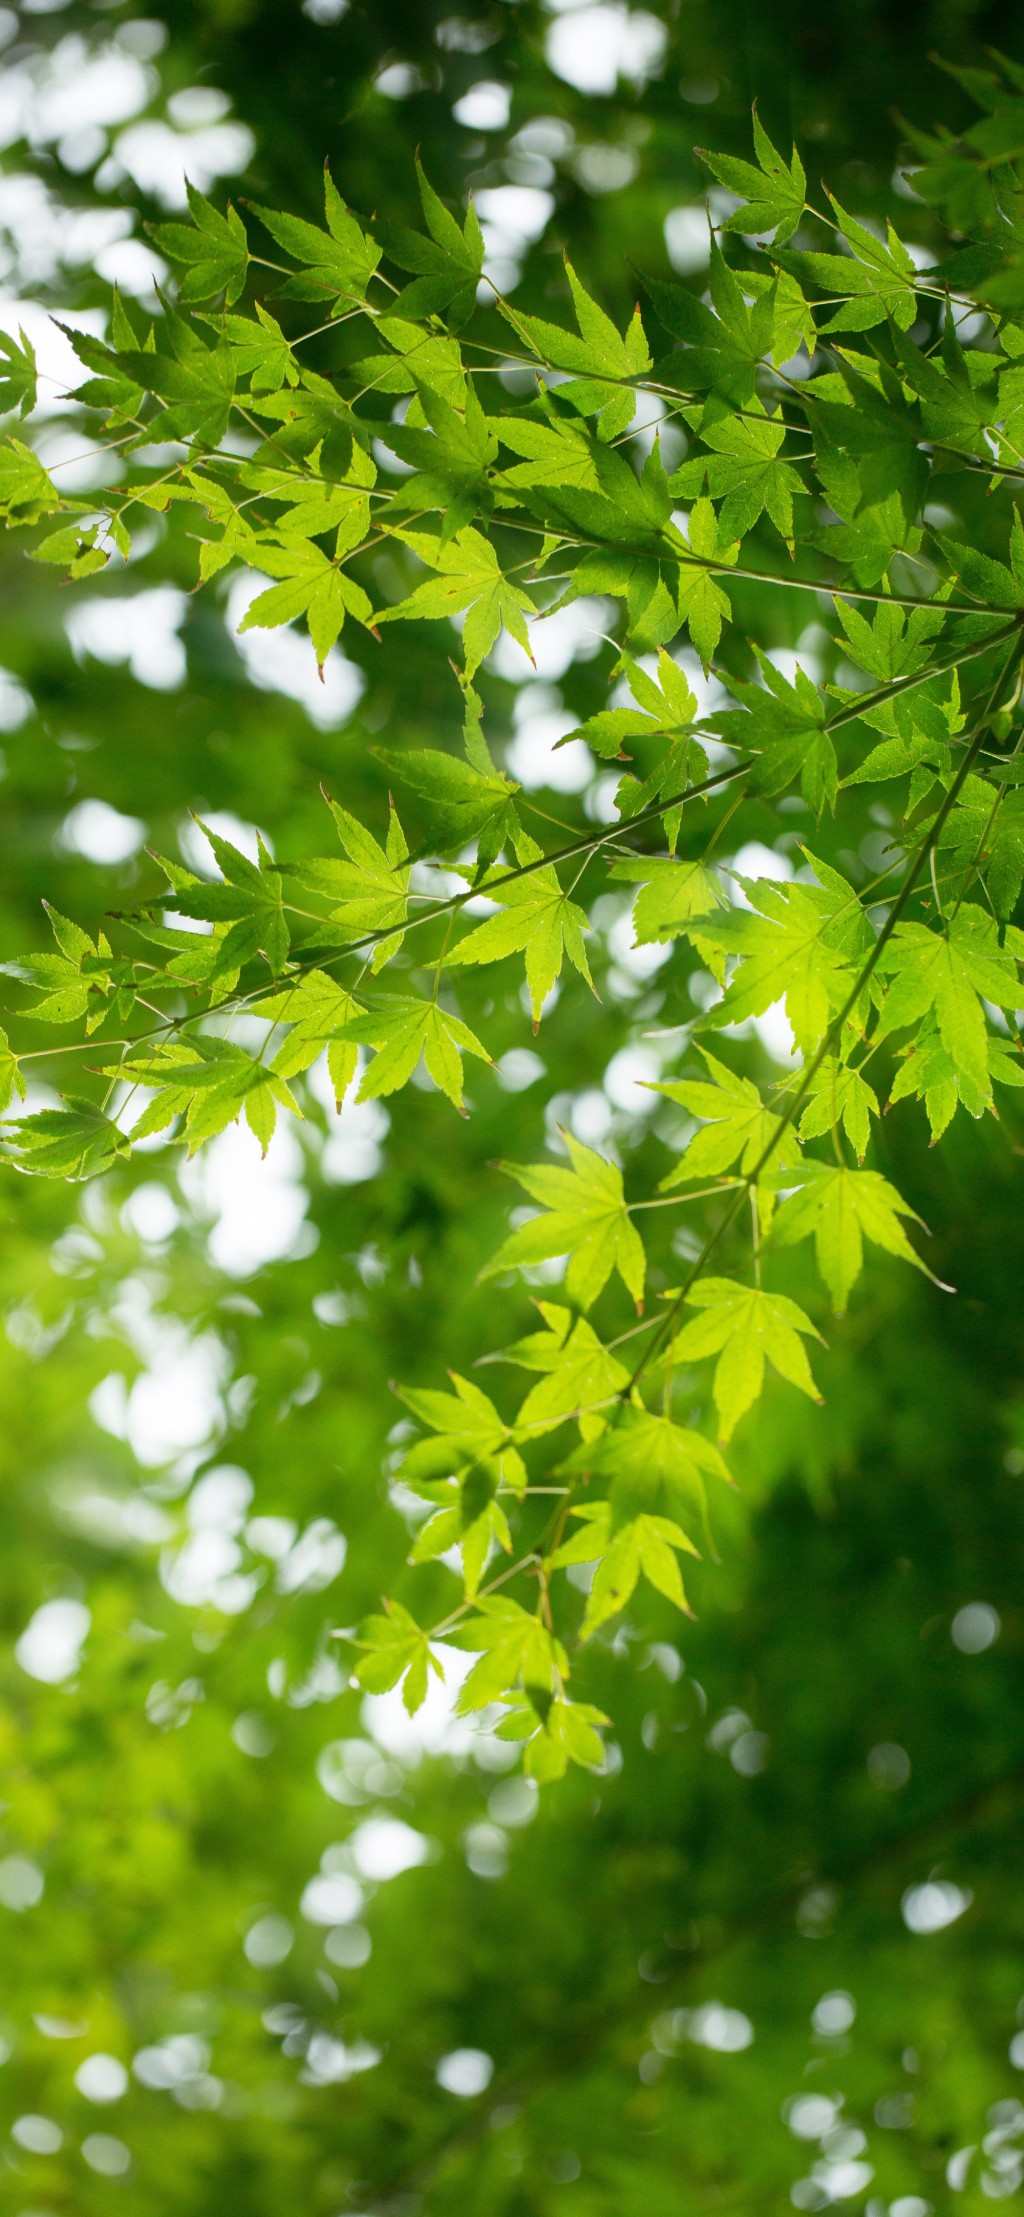 清新绿色树叶倾心风景手机壁纸